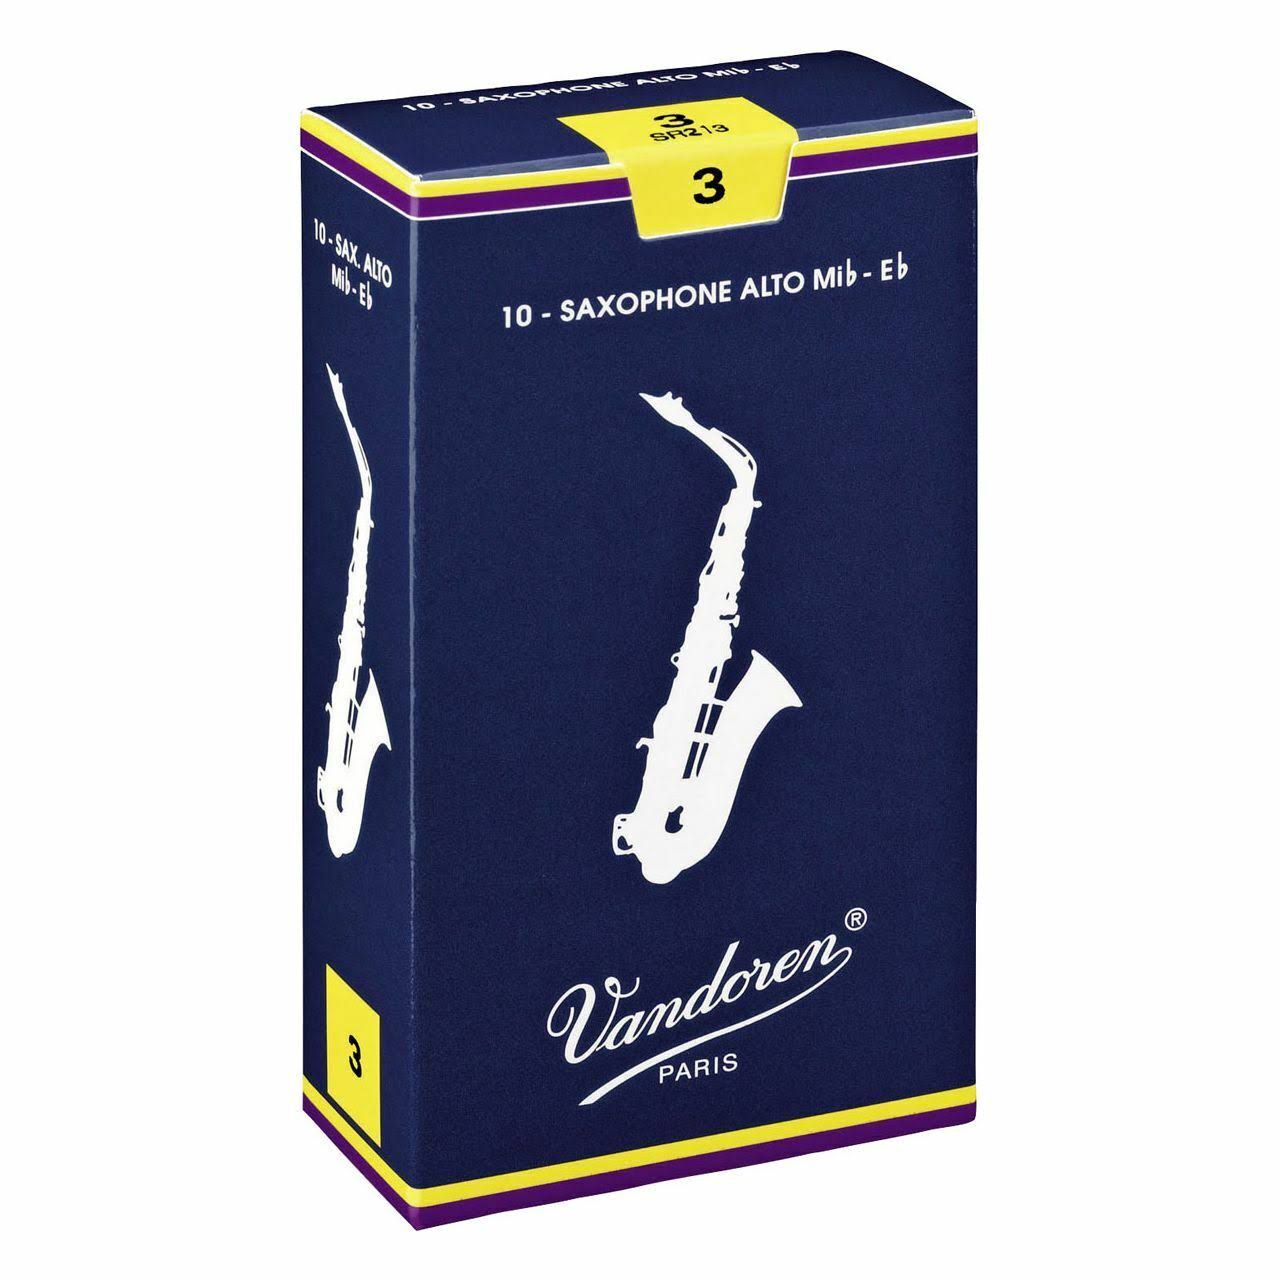 Vandoren Alto Saxophone Reeds 2.0